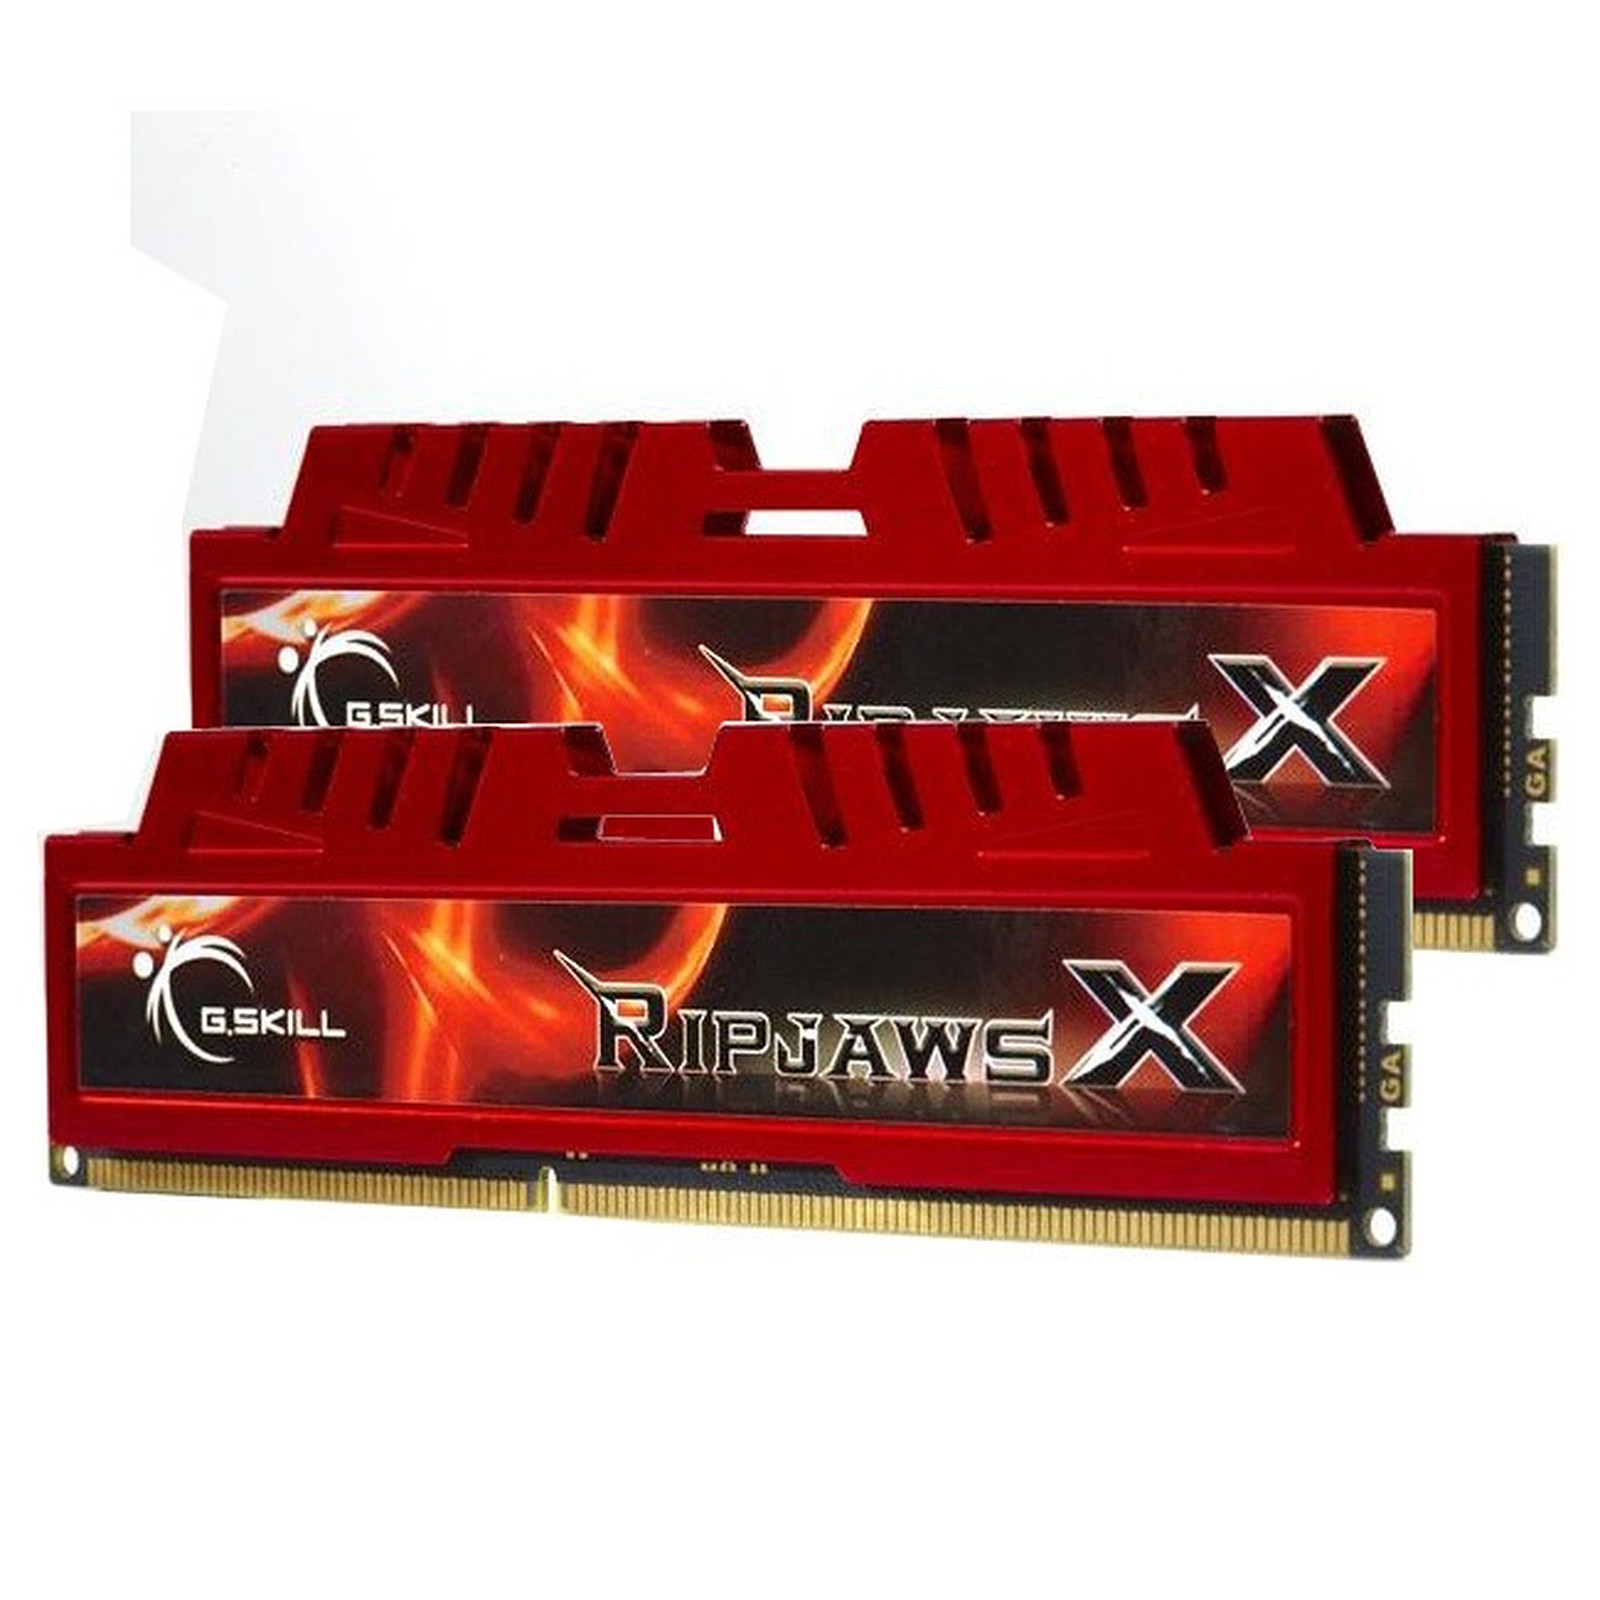 G.Skill XL Series RipJaws X Series 4 Go (kit 2x 2 Go) DDR3 1600 MHz - Memoire PC G.Skill